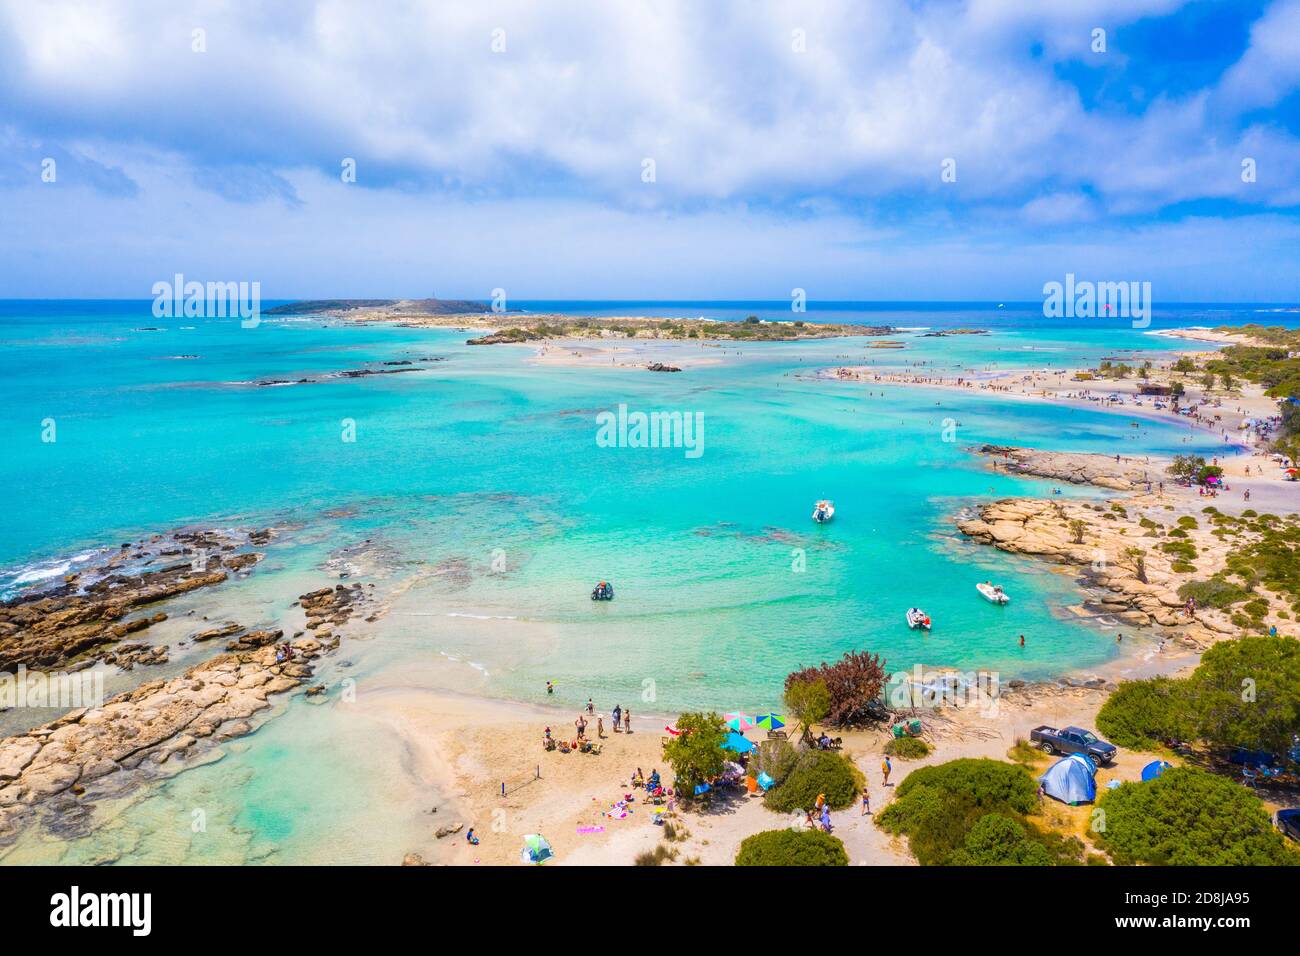 La plage de sable tropicale avec de l'eau turquoise, dans d'Elafonisi, Crète, Grèce Banque D'Images